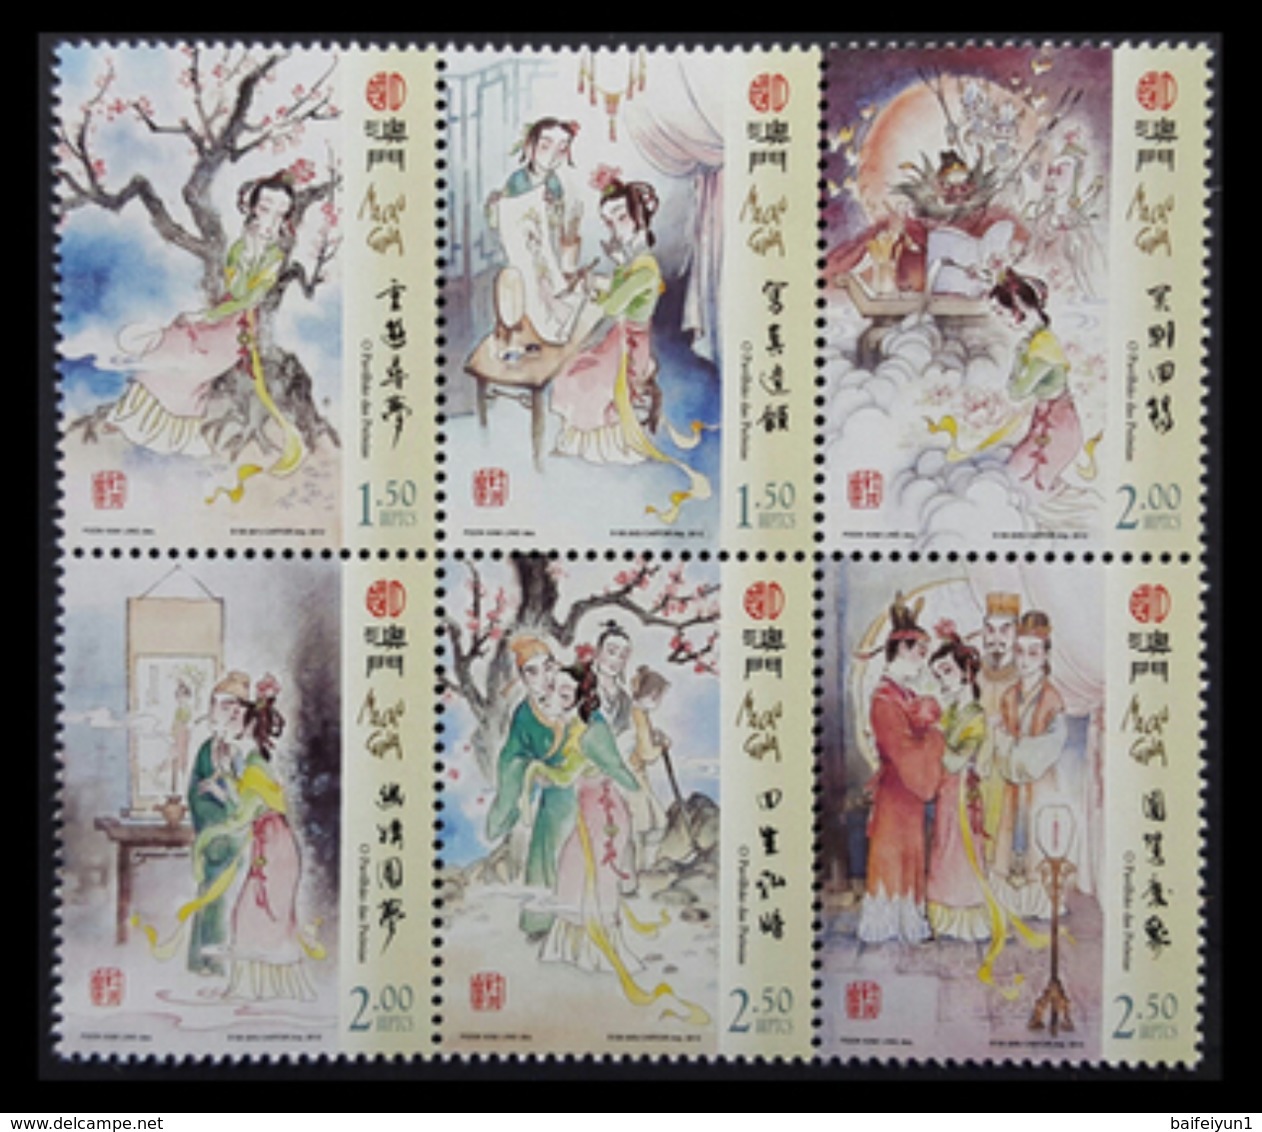 Macau Macao 2012 Literature Peony Pavilion Art  6V - Unused Stamps